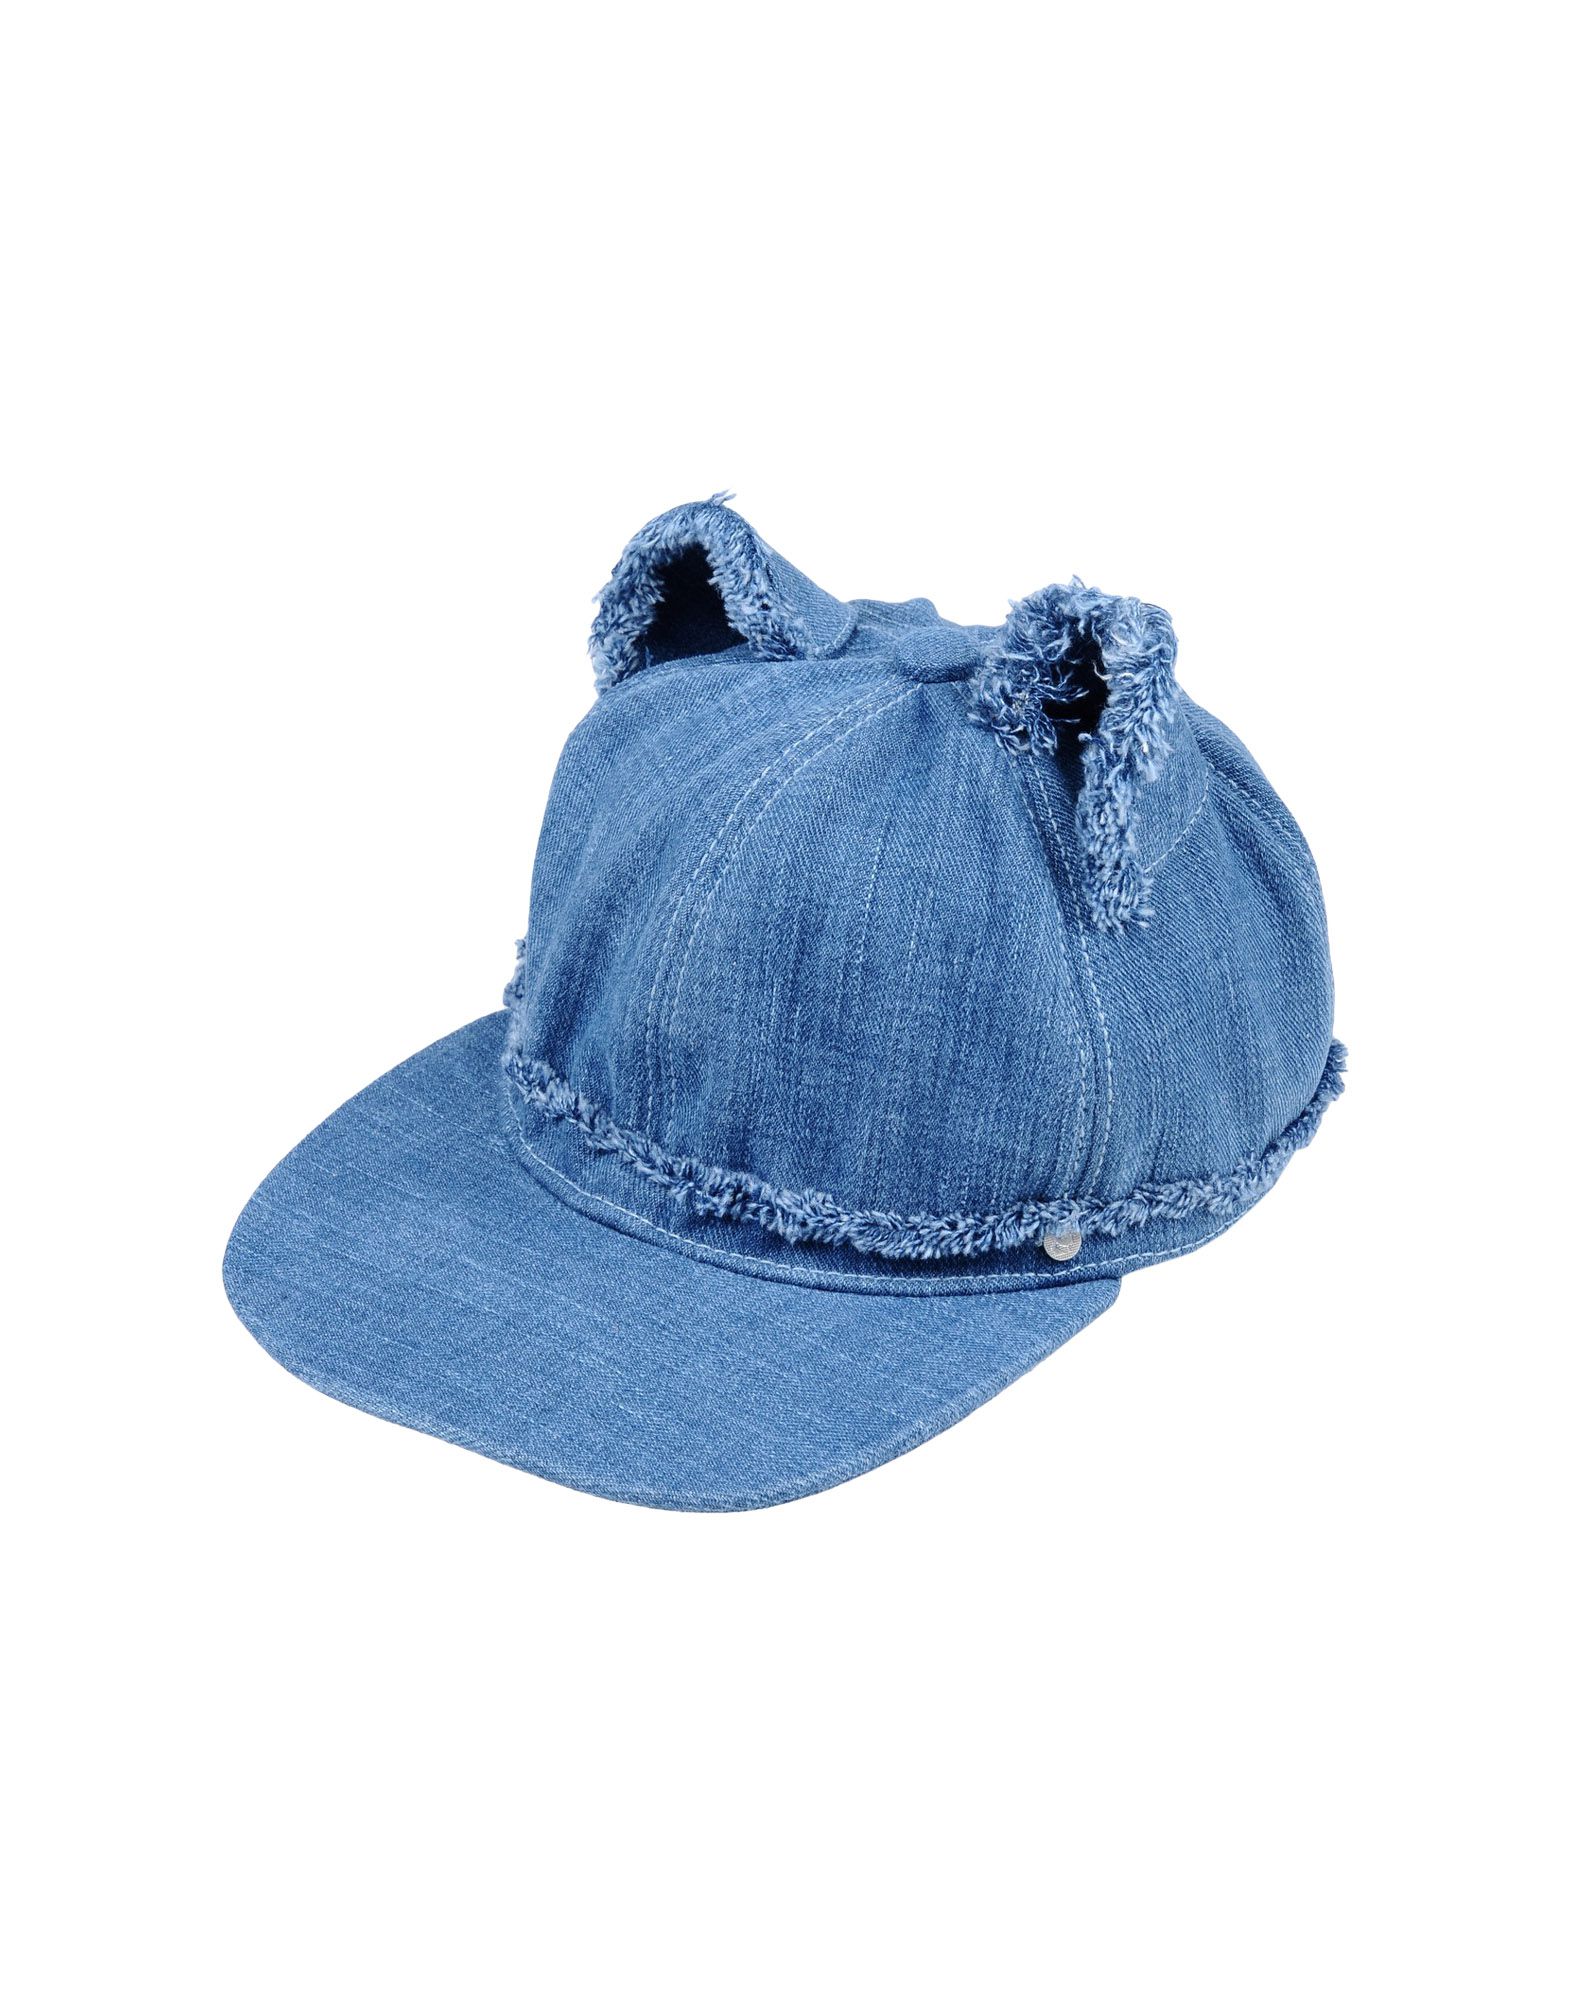 《送料無料》KARL LAGERFELD レディース 帽子 ブルー S コットン 100%